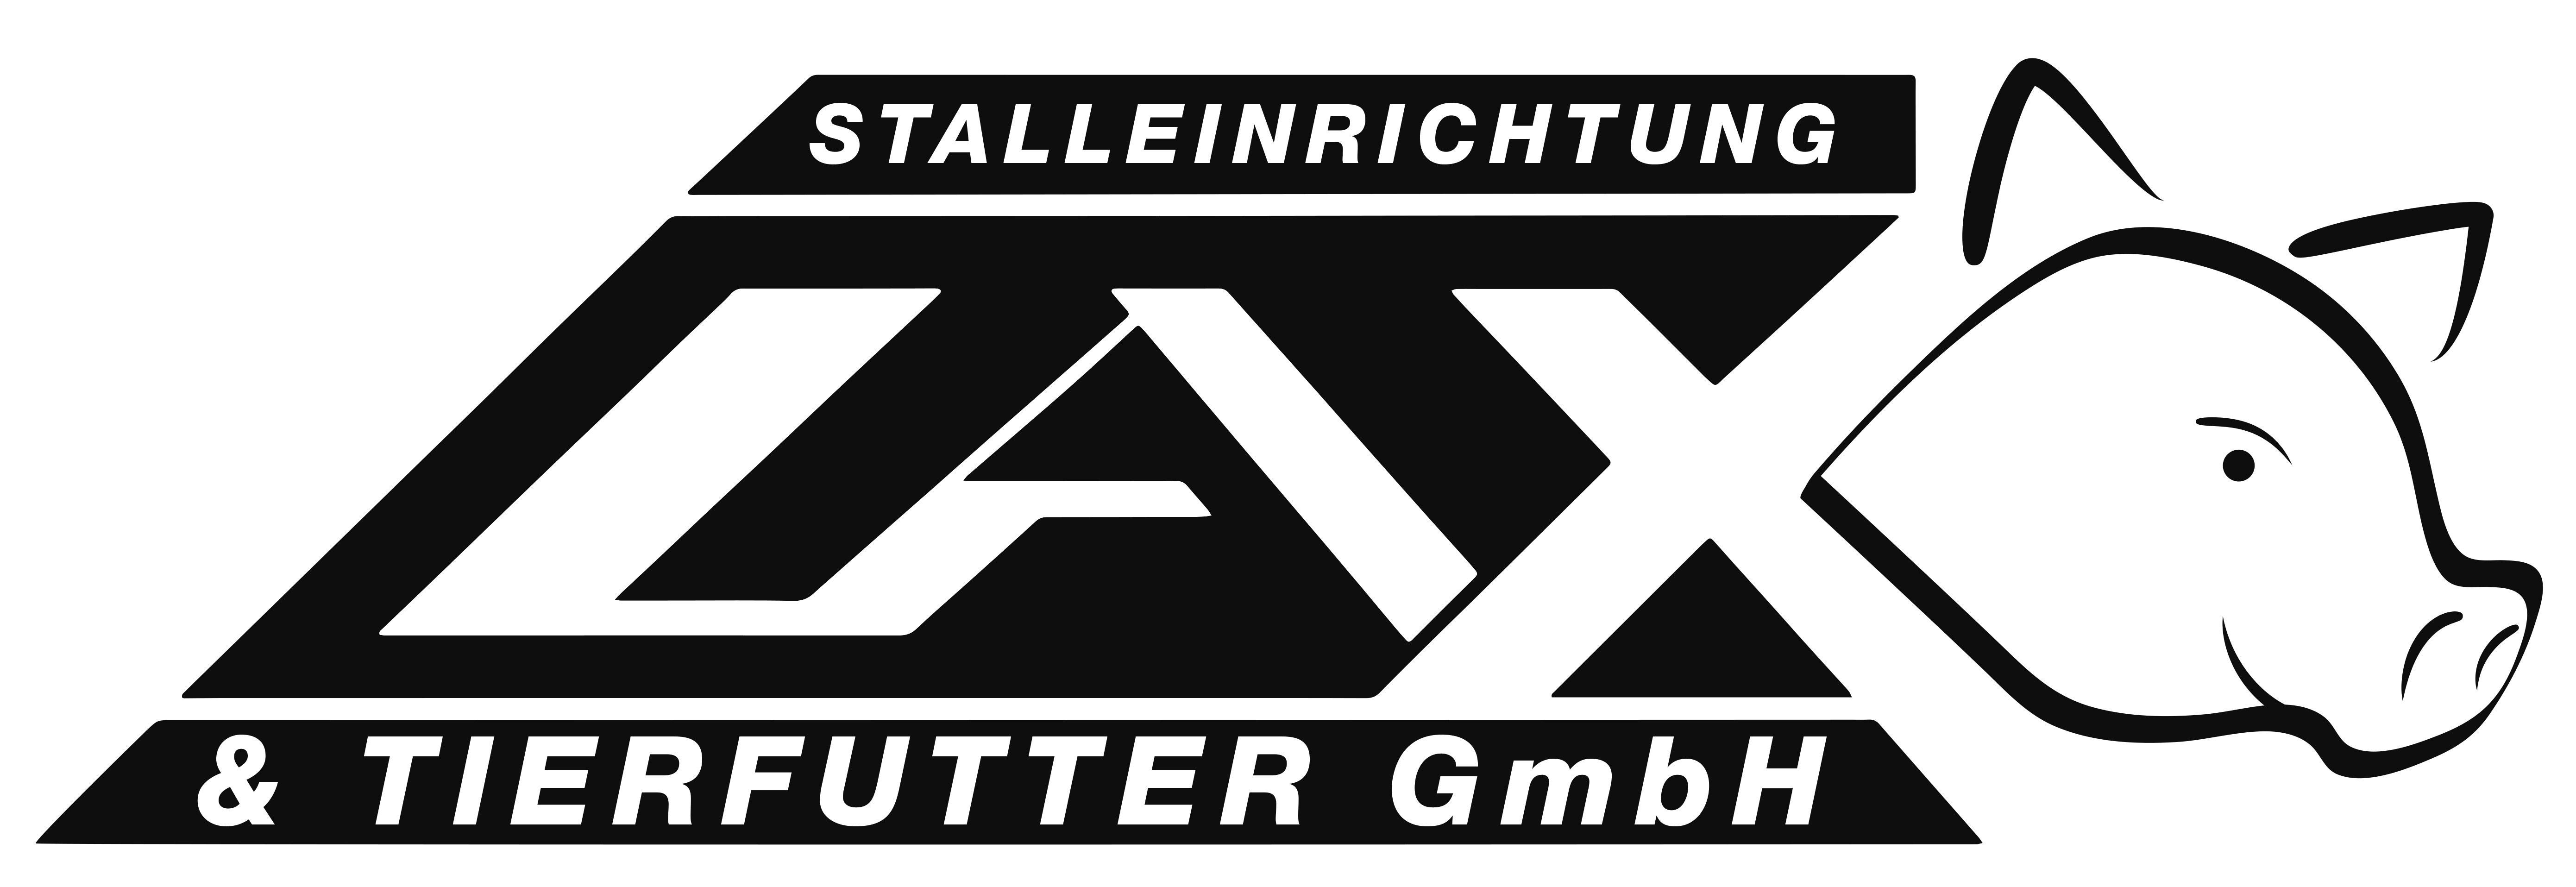 Lax Stalleinrichtung & Tierfutter GmbH Logo